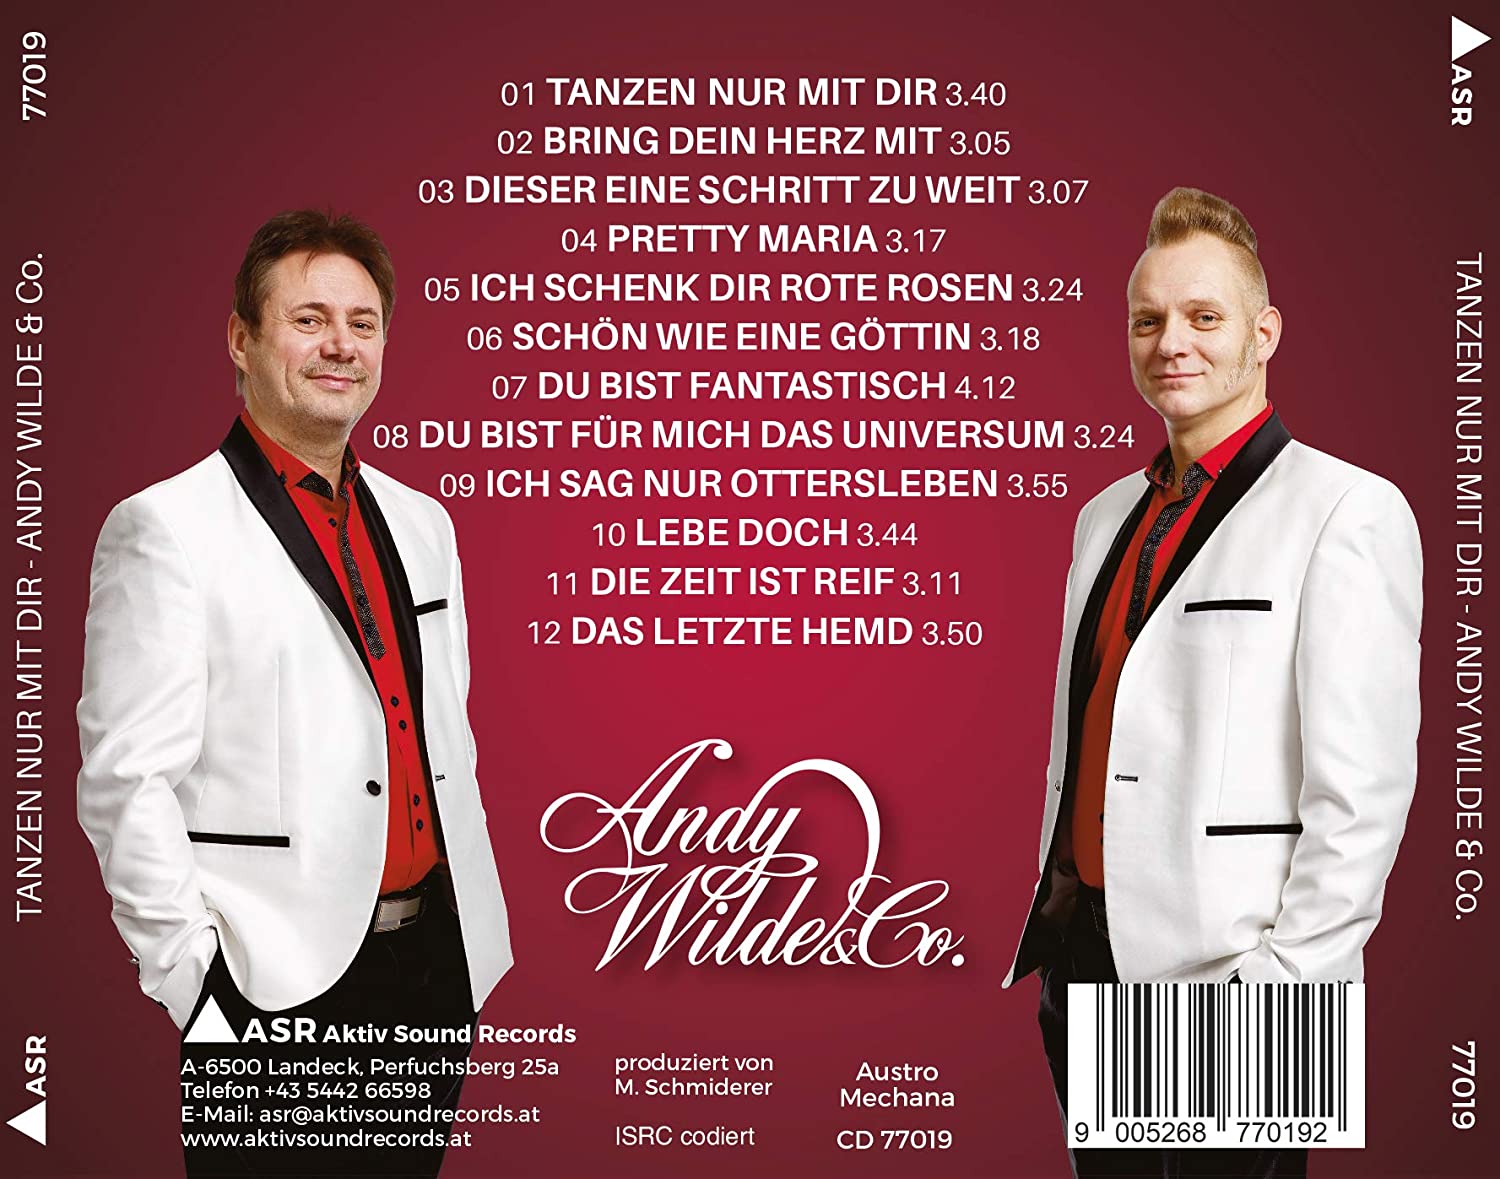 Andy Wilde & Co. - Tanzen nur mit dir (2020)